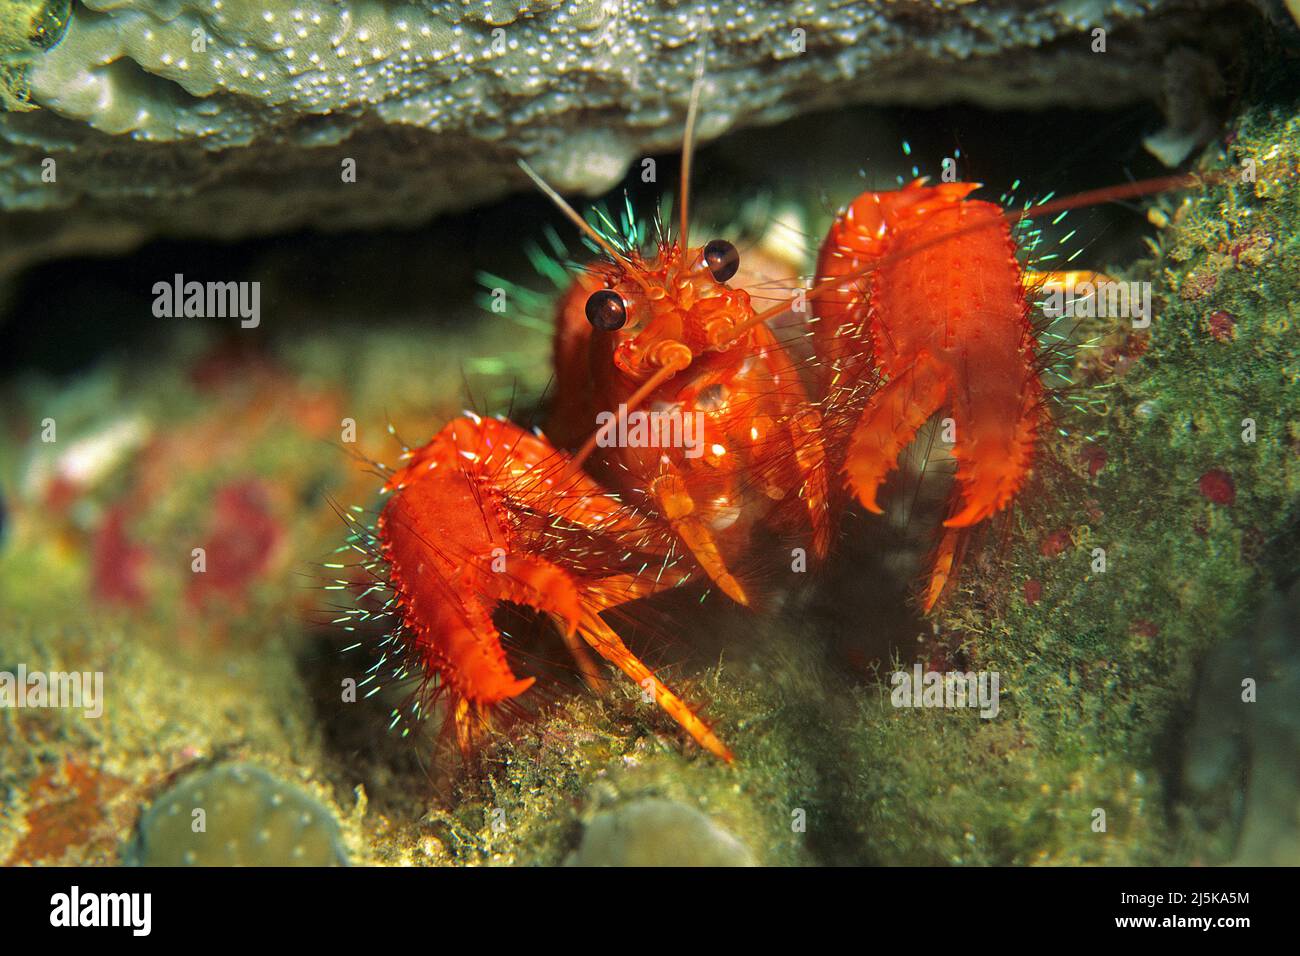 Aragosta rossa della barriera corallina o aragosta pelosa (Enoplometopus occidentalis), di notte, Maldive, Oceano Indiano, Asia Foto Stock